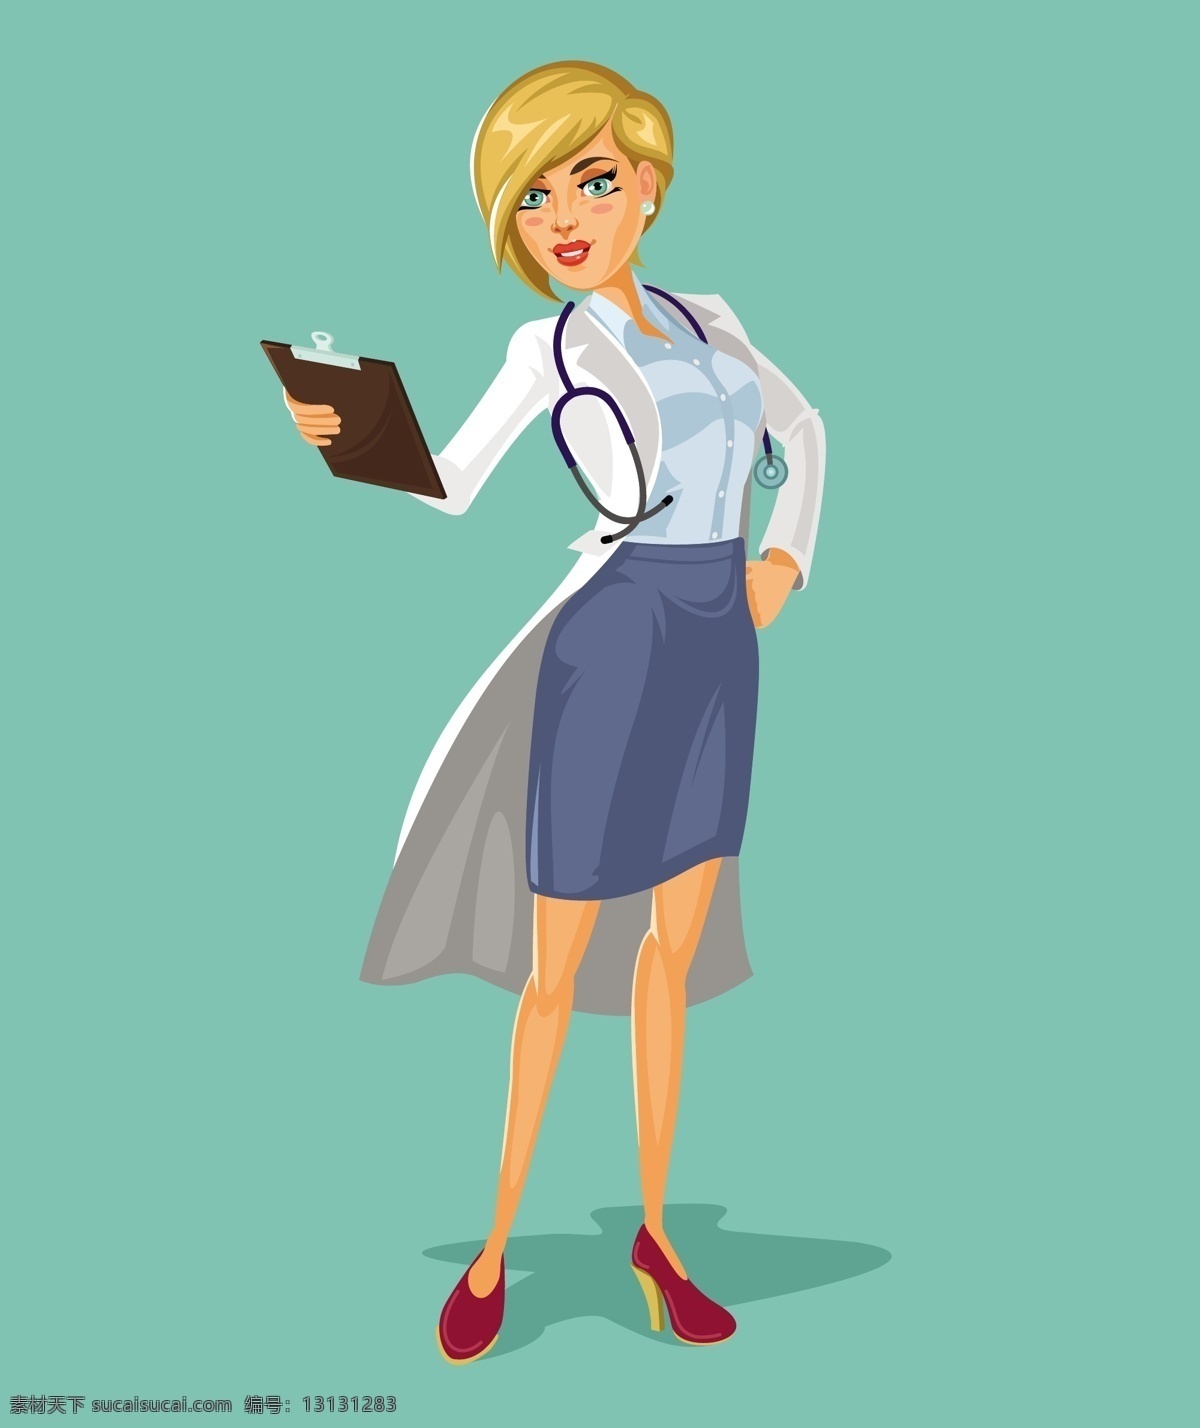 矢量 三维 女 医生 医疗 文字 卡通 健康 医院 人 白色 报告 服务 帮助 卡通人物 护士 护理 女性 年轻 听诊器